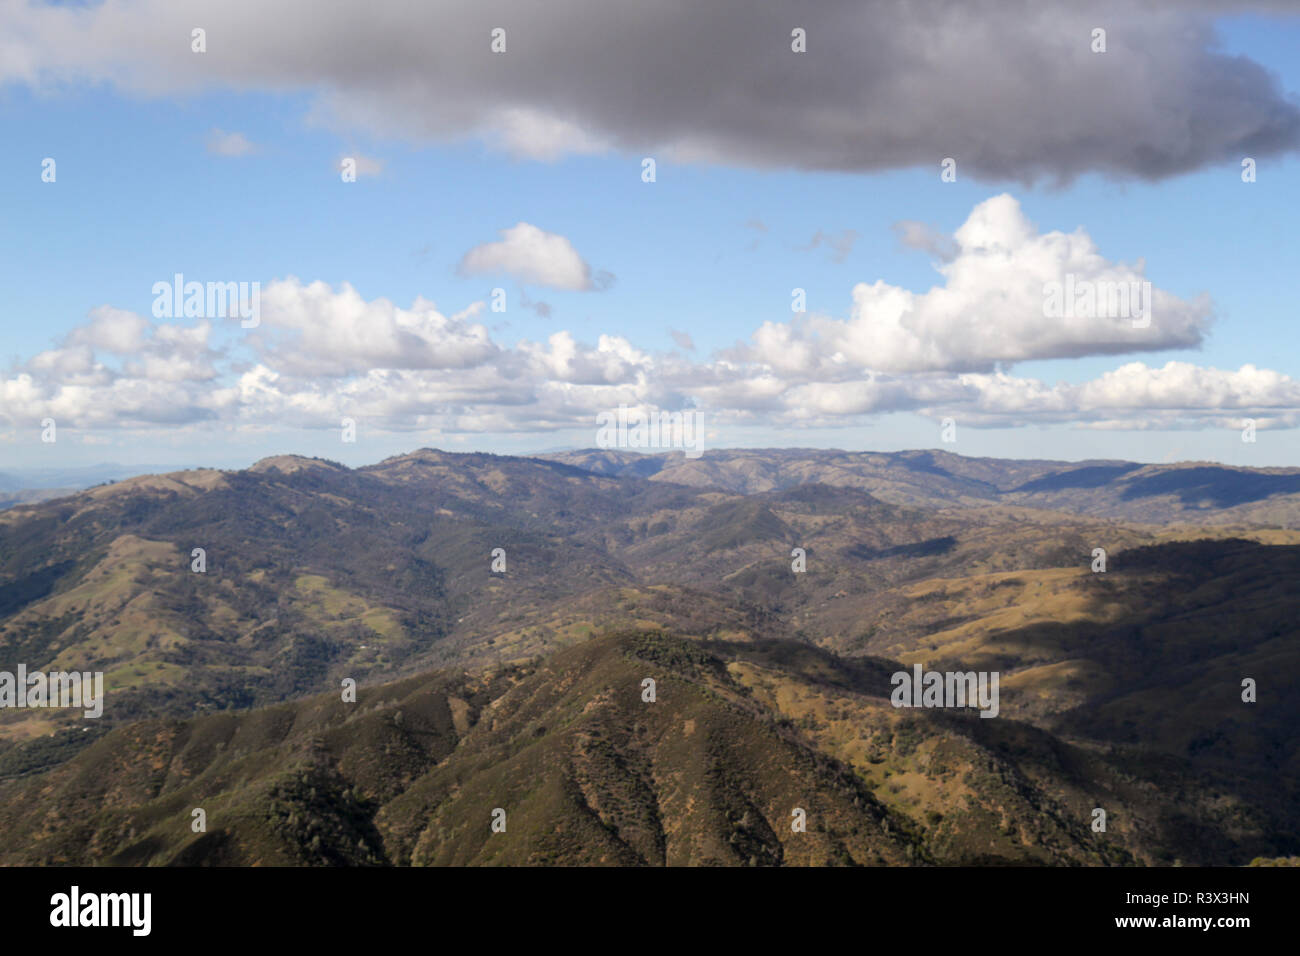 View near the summit of Mount Hamilton, Santa Clara County, California, USA Stock Photo